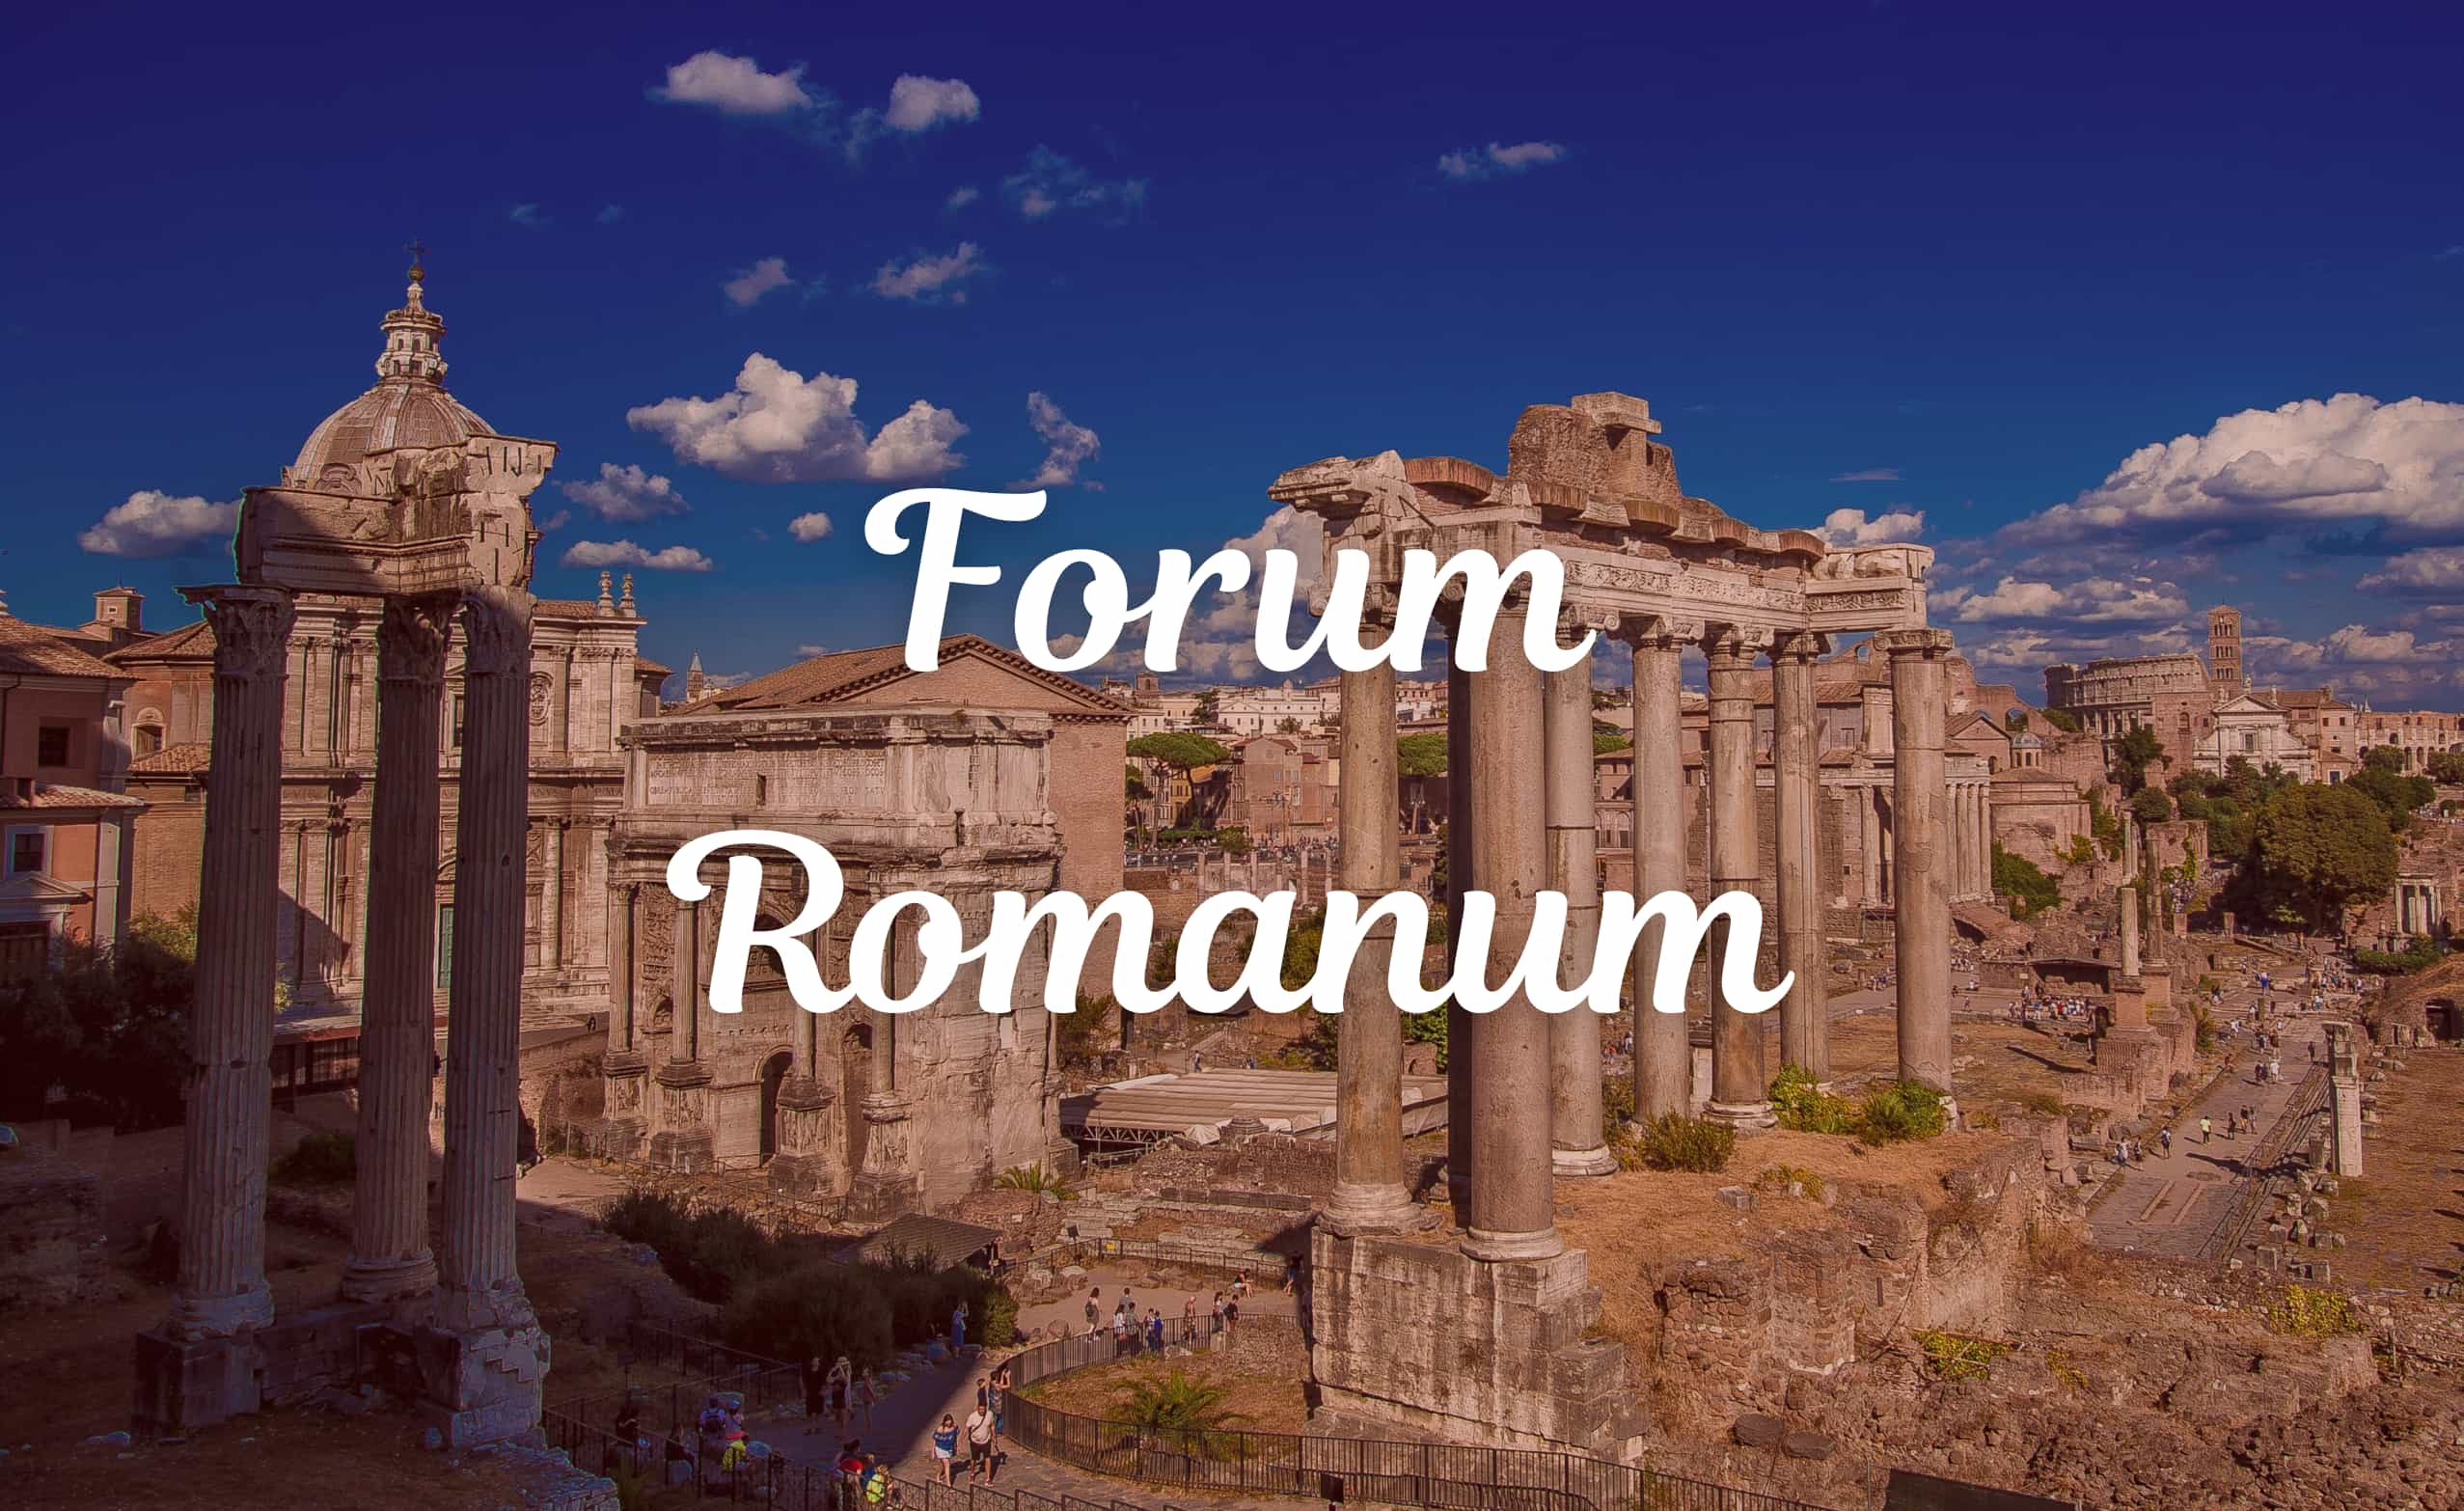 O ciekawostkach na temat Forum Romanum możesz przeczytać w artykule na blogu - kliknij w zdjęcie powyżej.